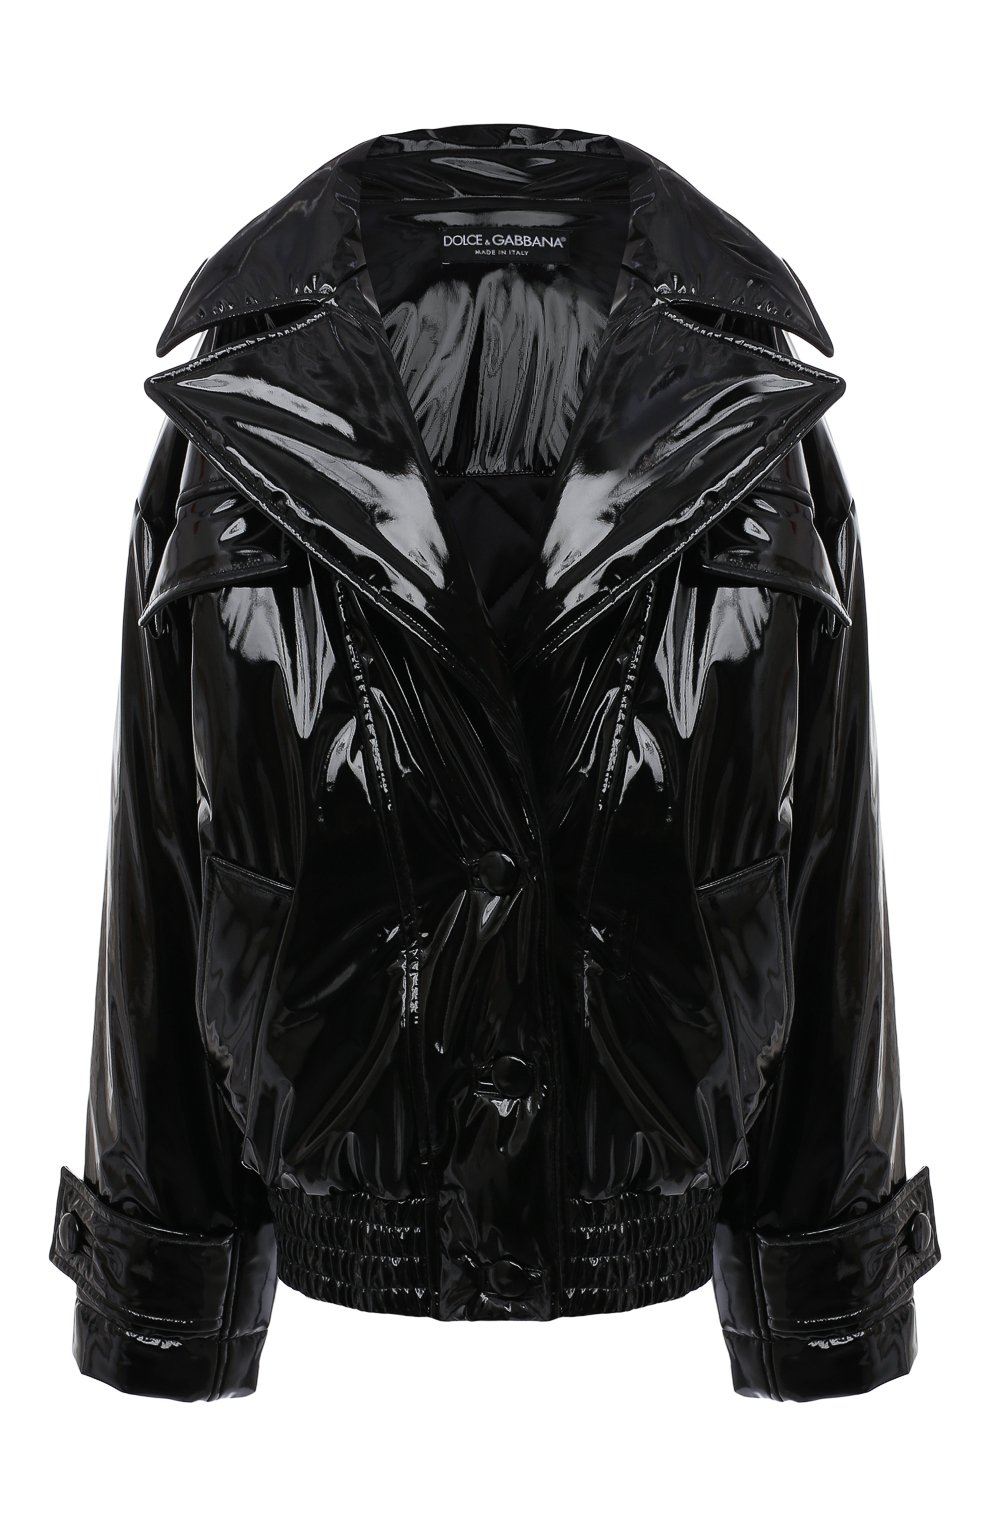 Женская утепленная куртка DOLCE & GABBANA черного цвета, арт. F9K07T/FUSJQ | Фото 1 (Кросс-КТ: Куртка, Утепленный, Пуховик; Рукава: Длинные; Стили: Гламурный; Материал внешний: Синтетический материал; Материал подклада: Синтетический ма териал; Длина (верхняя одежда): Короткие)